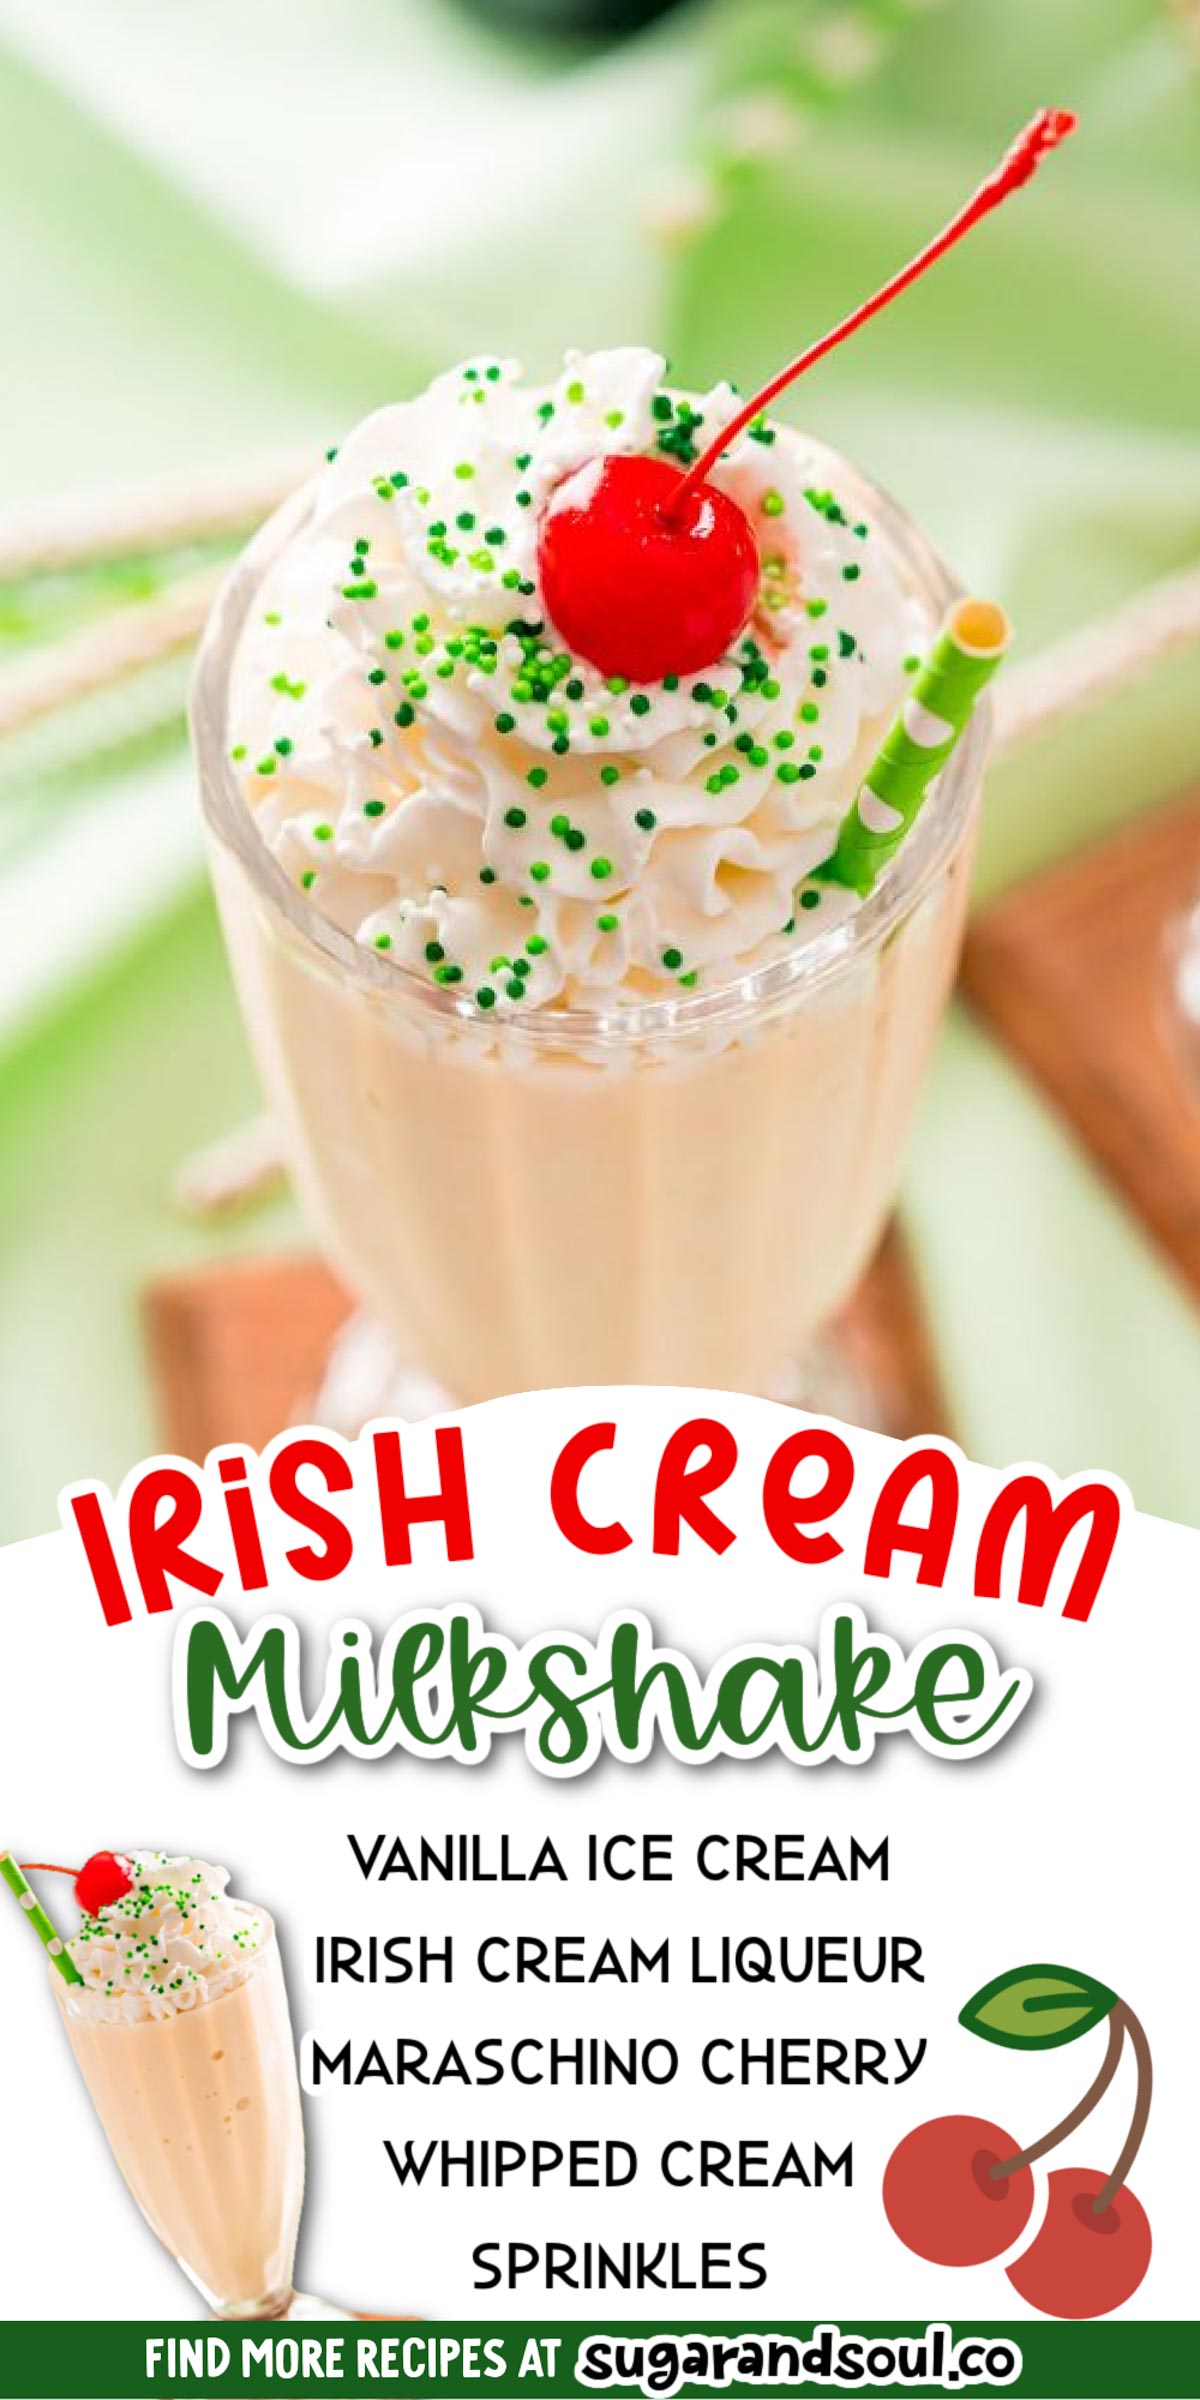 Irish Cream Milkshakes are made with vanilla ice cream and Baileys Irish cream making for the best boozy sweet treat!  via @sugarandsoulco